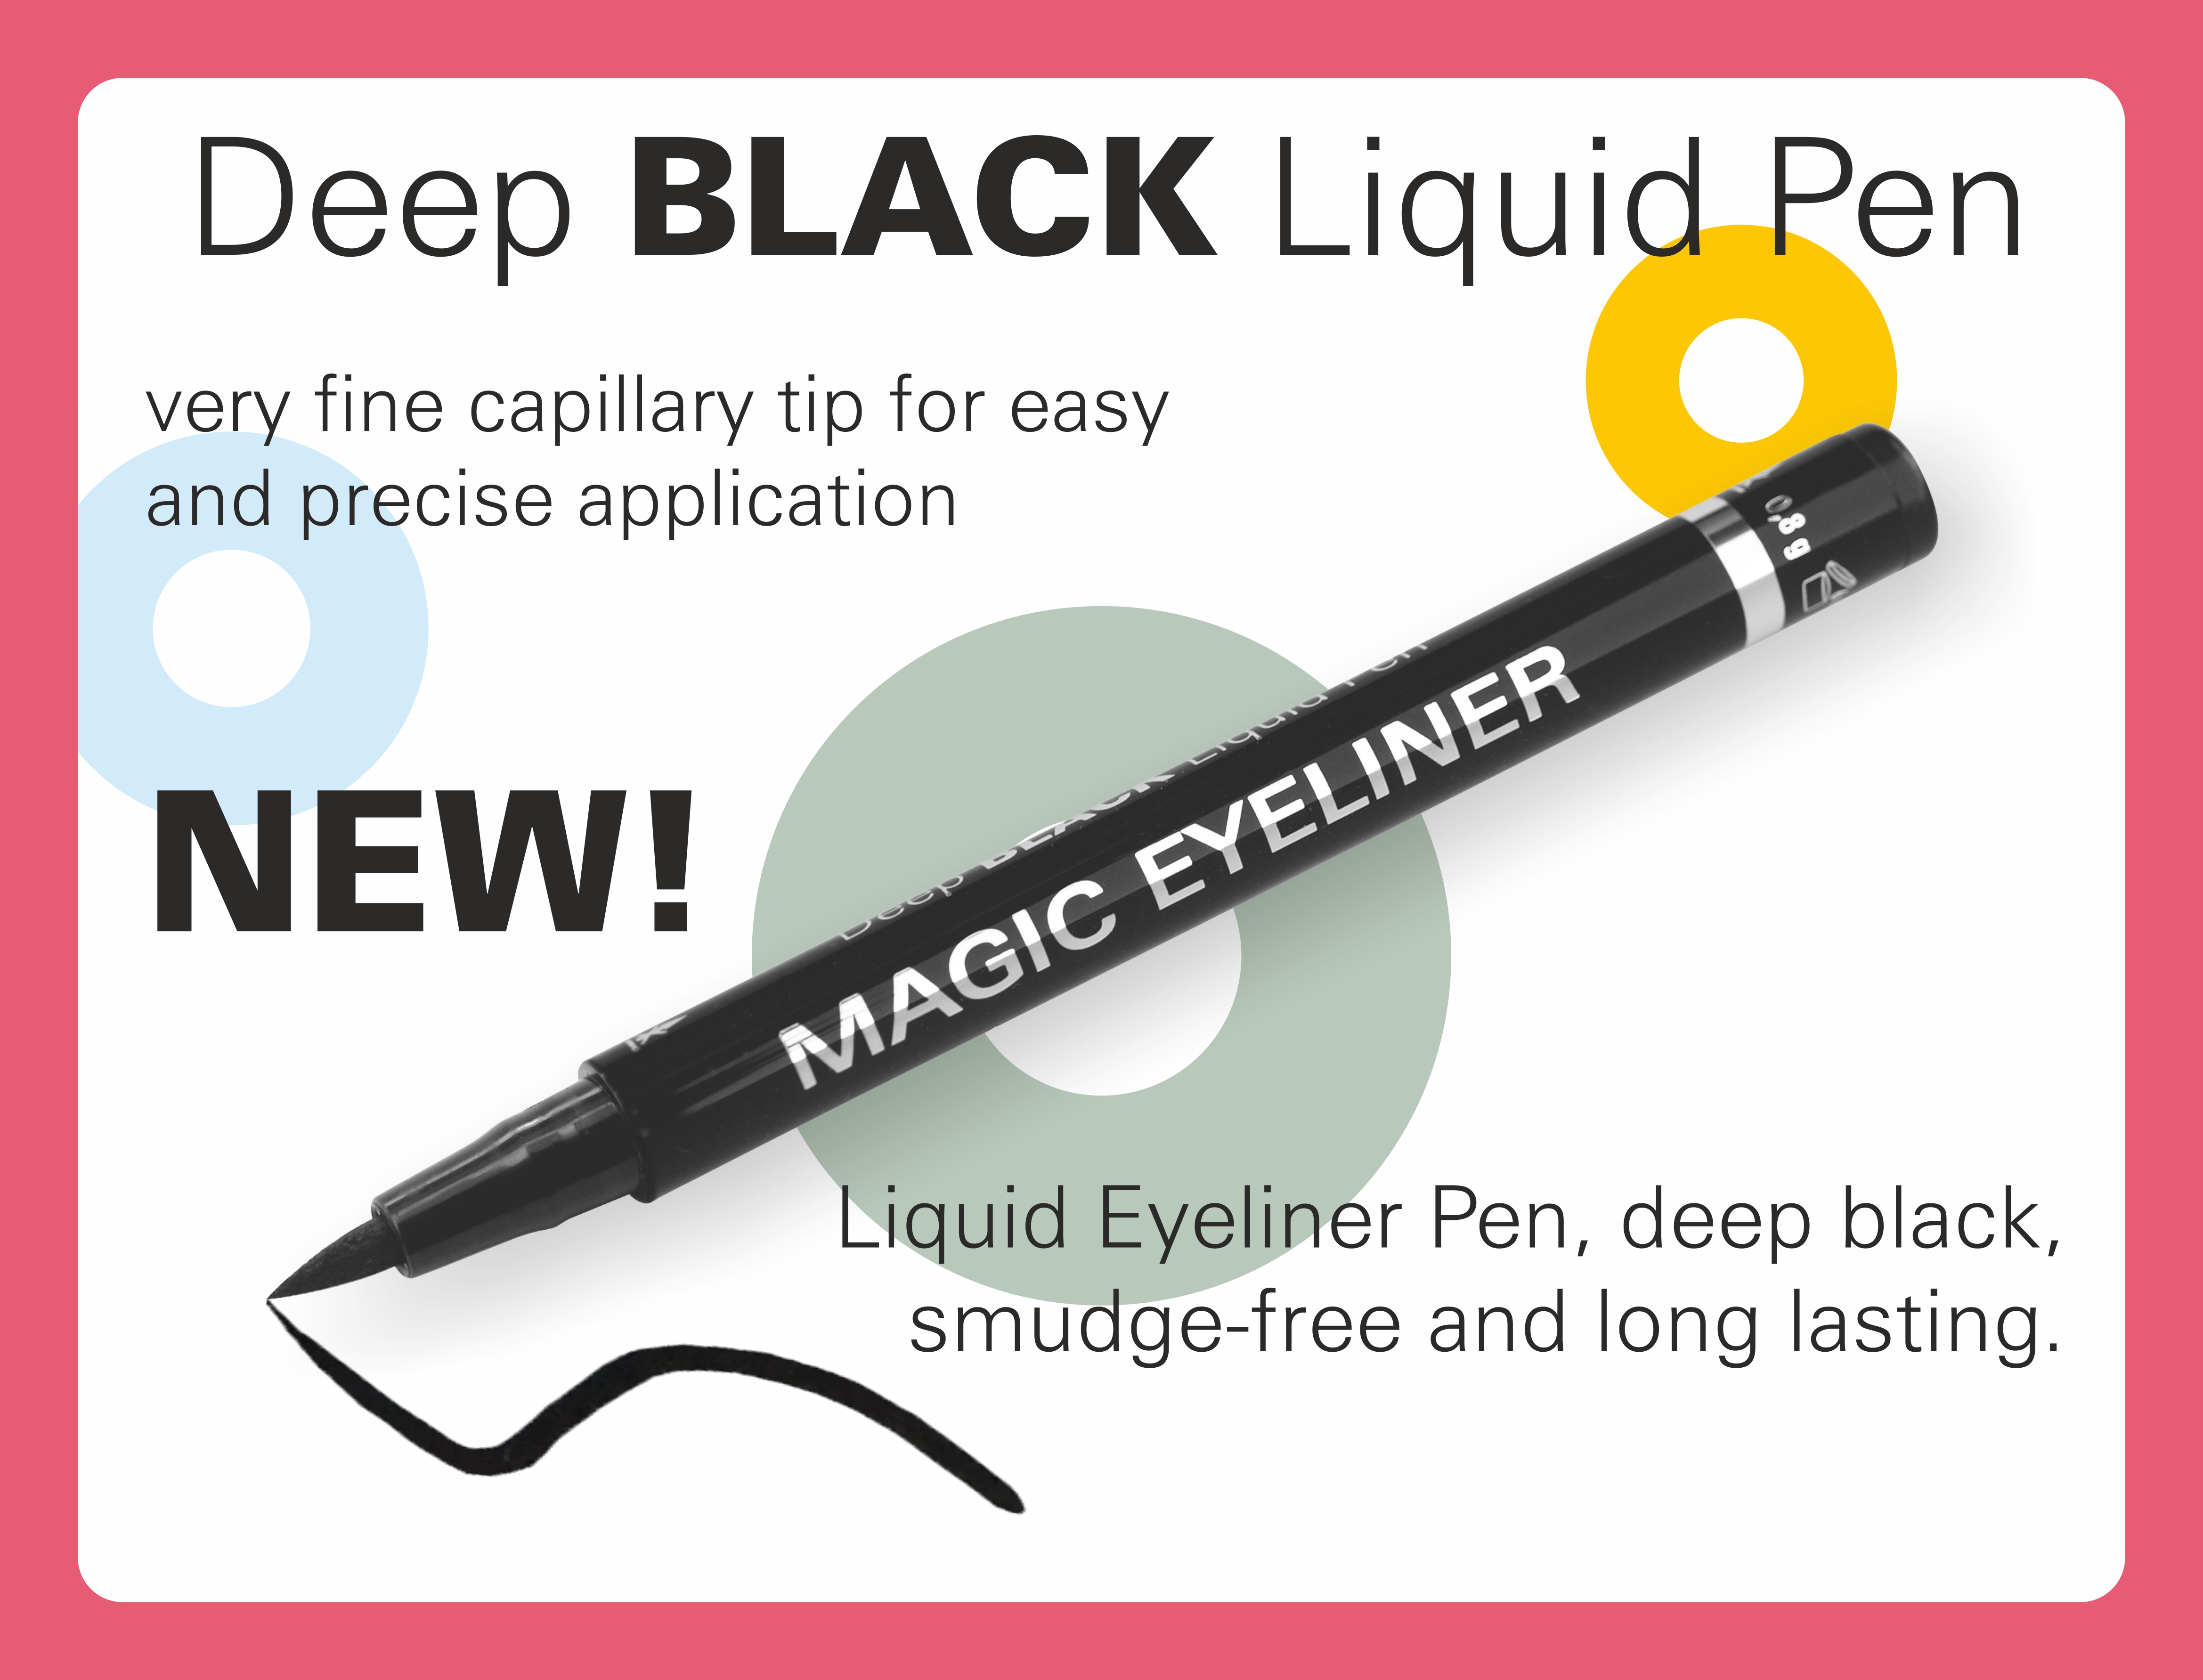 Deep BLACK Liquid Pen